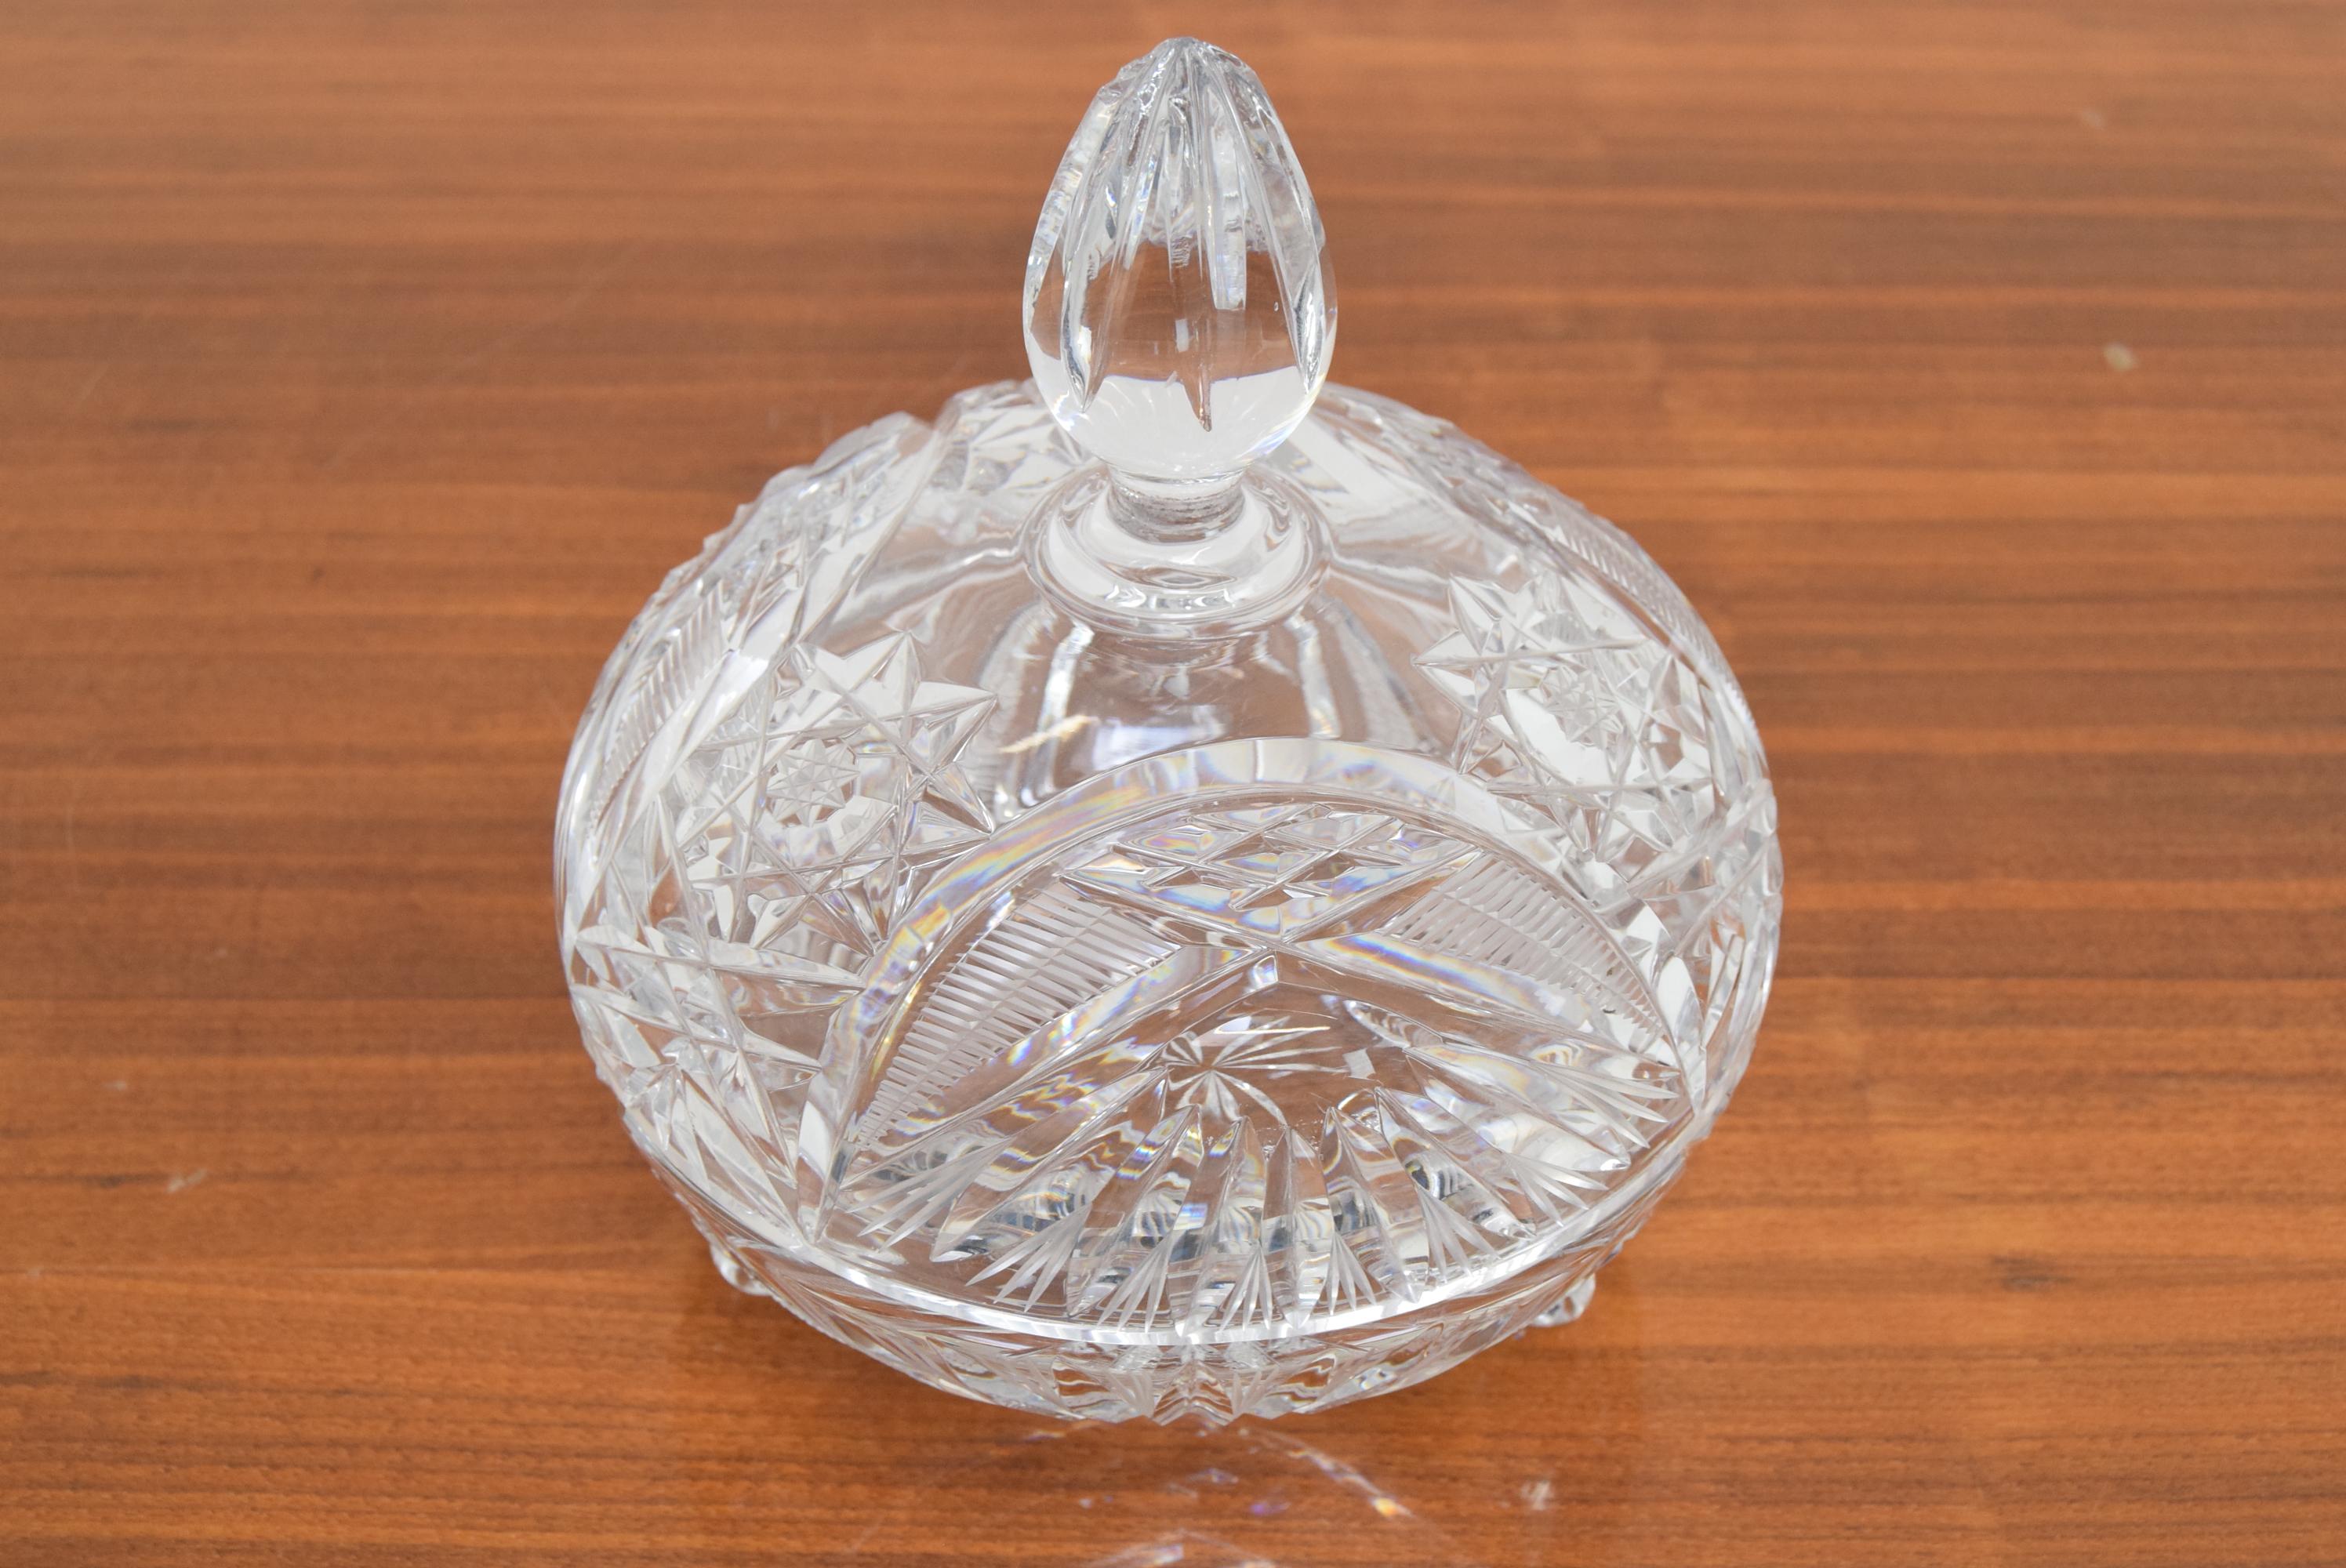 
Hergestellt in der Tschechoslowakei
Hergestellt aus Kristallglas, geschliffenem Glas
Das Glas hat kleine scharfe Splitter an der Spitze
Neu poliert
Ursprünglicher Zustand
